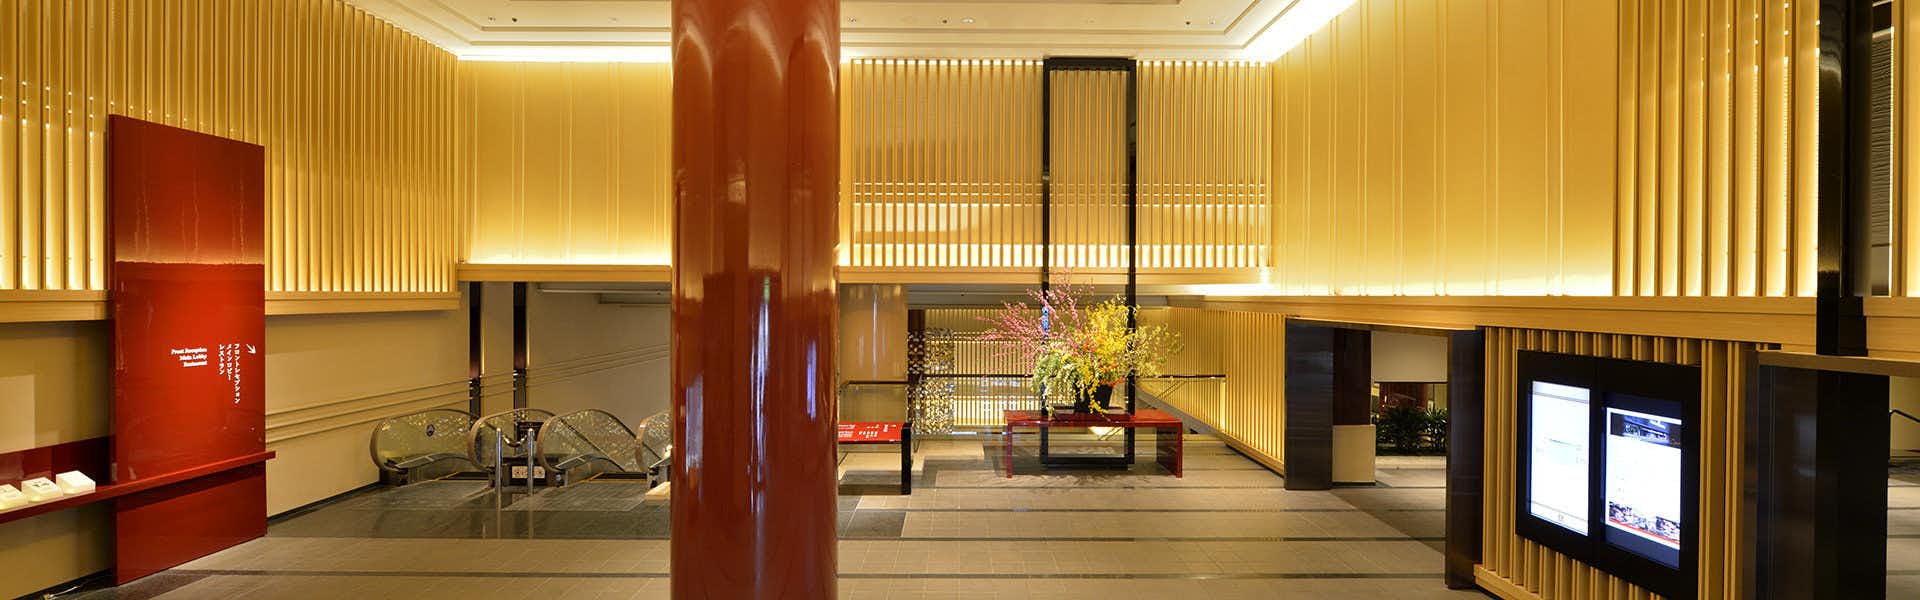 【京都東急ホテル】の空室状況を確認する 宿泊予約は 一休com